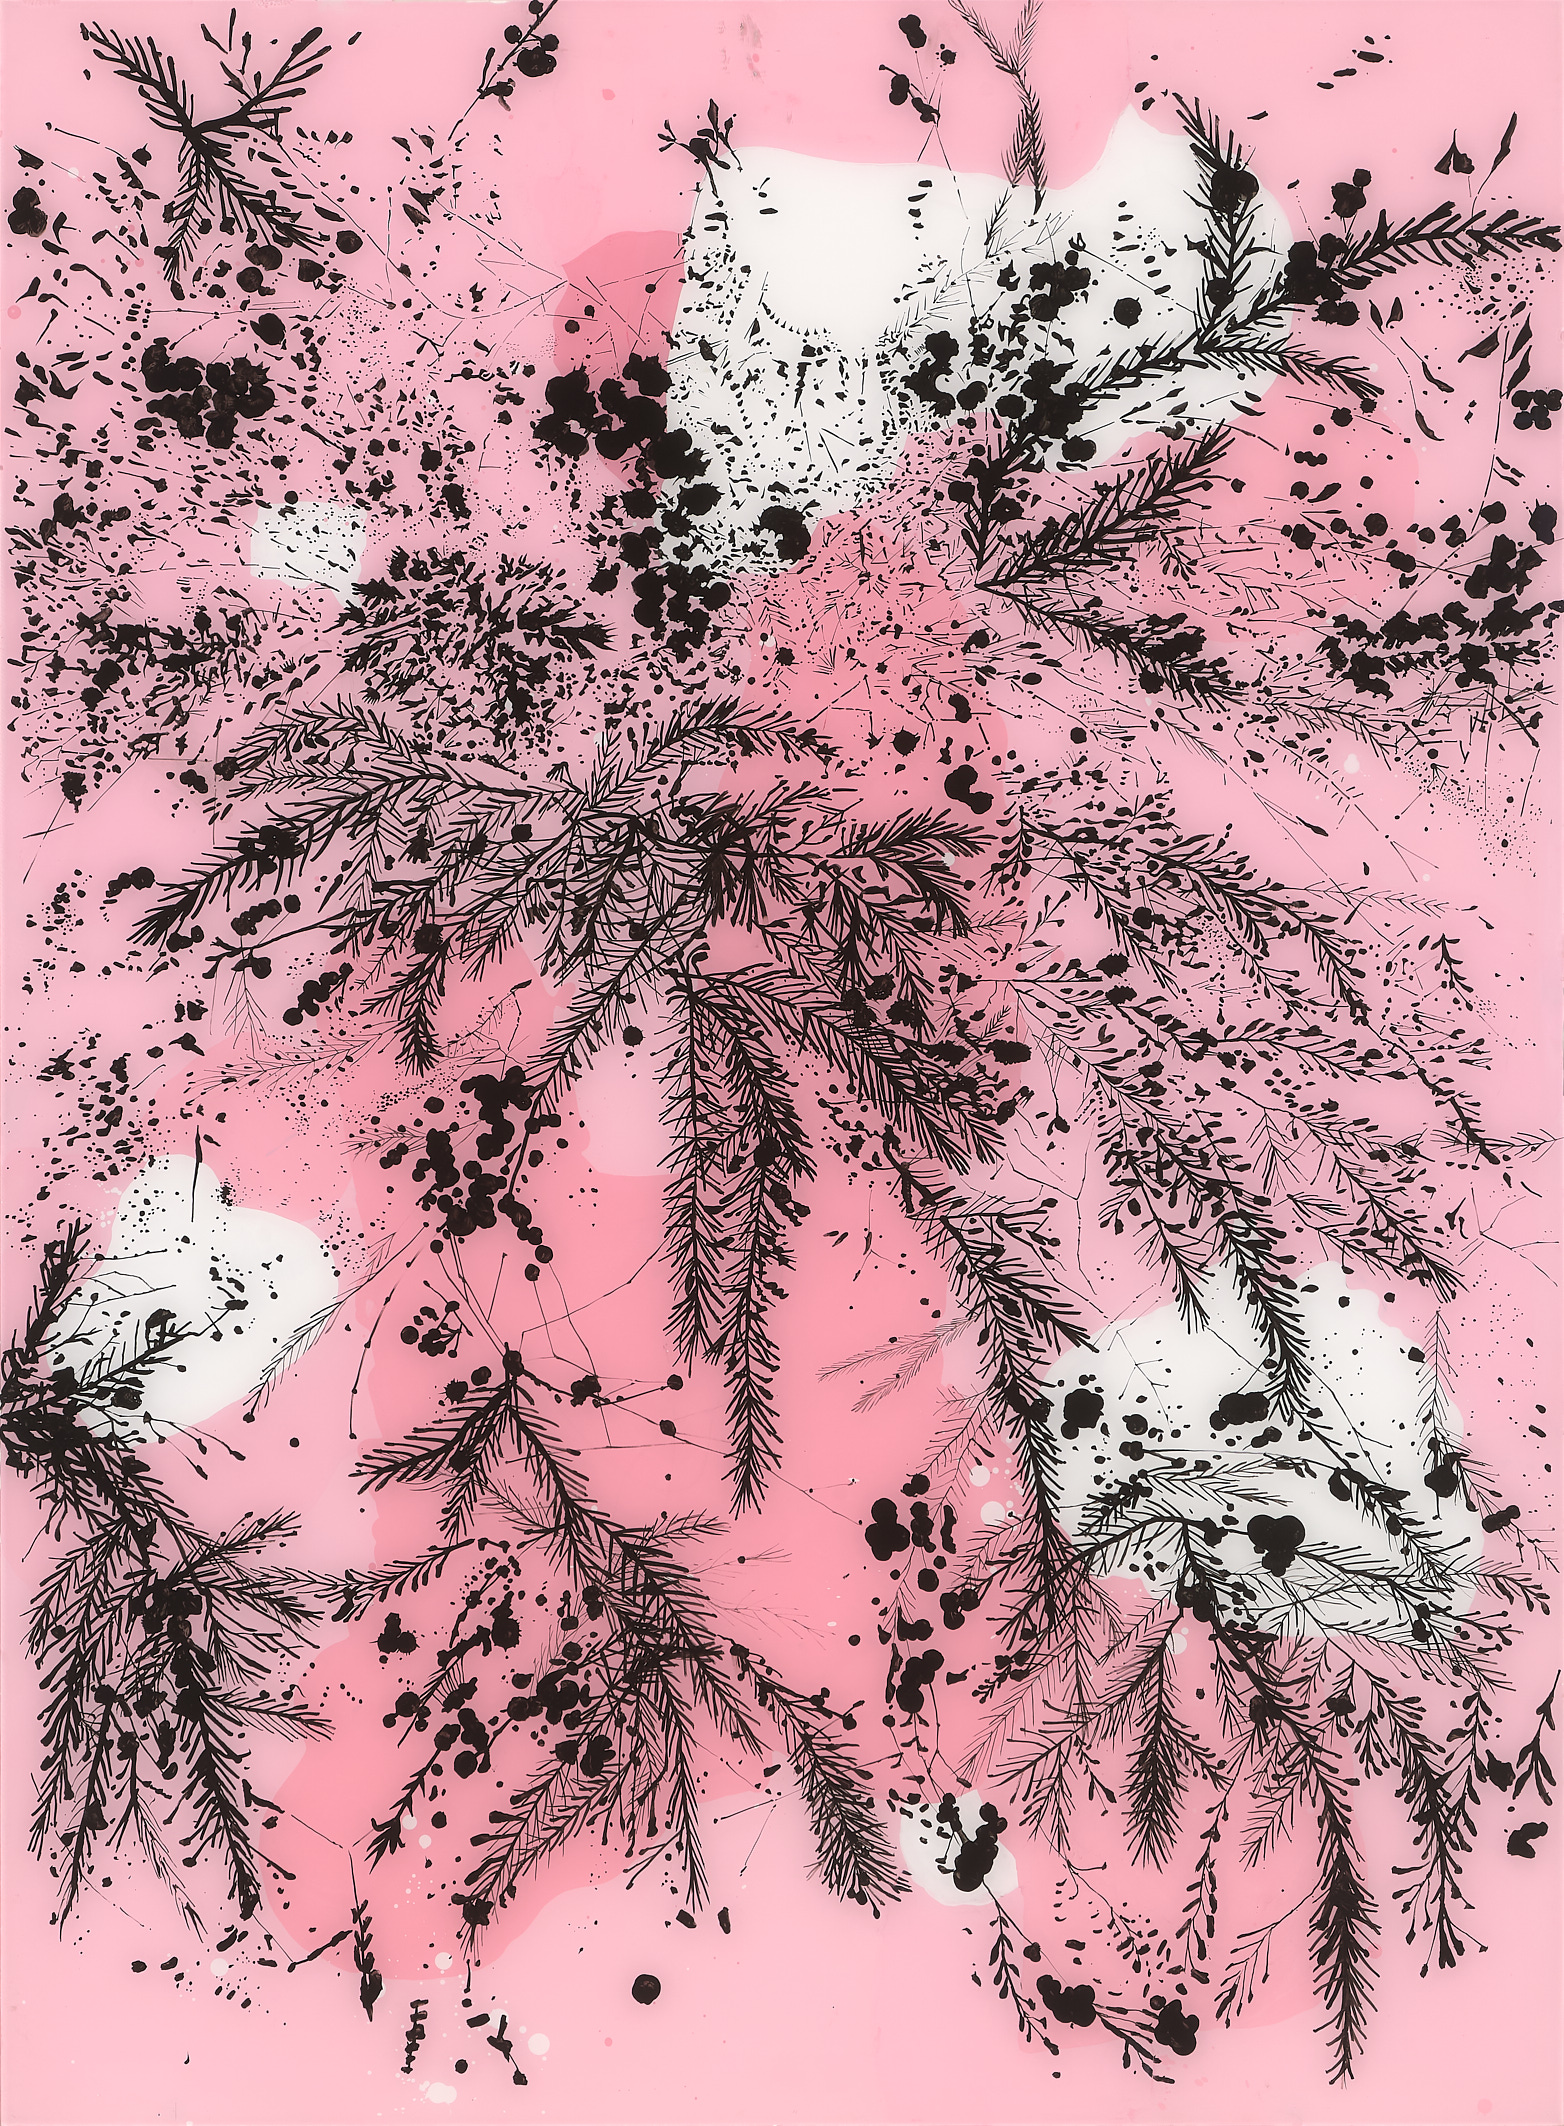 Mark Hislop 'Fern Tree Gully 2' acrylic on acrylic sheet 164 x 122cm $9,000